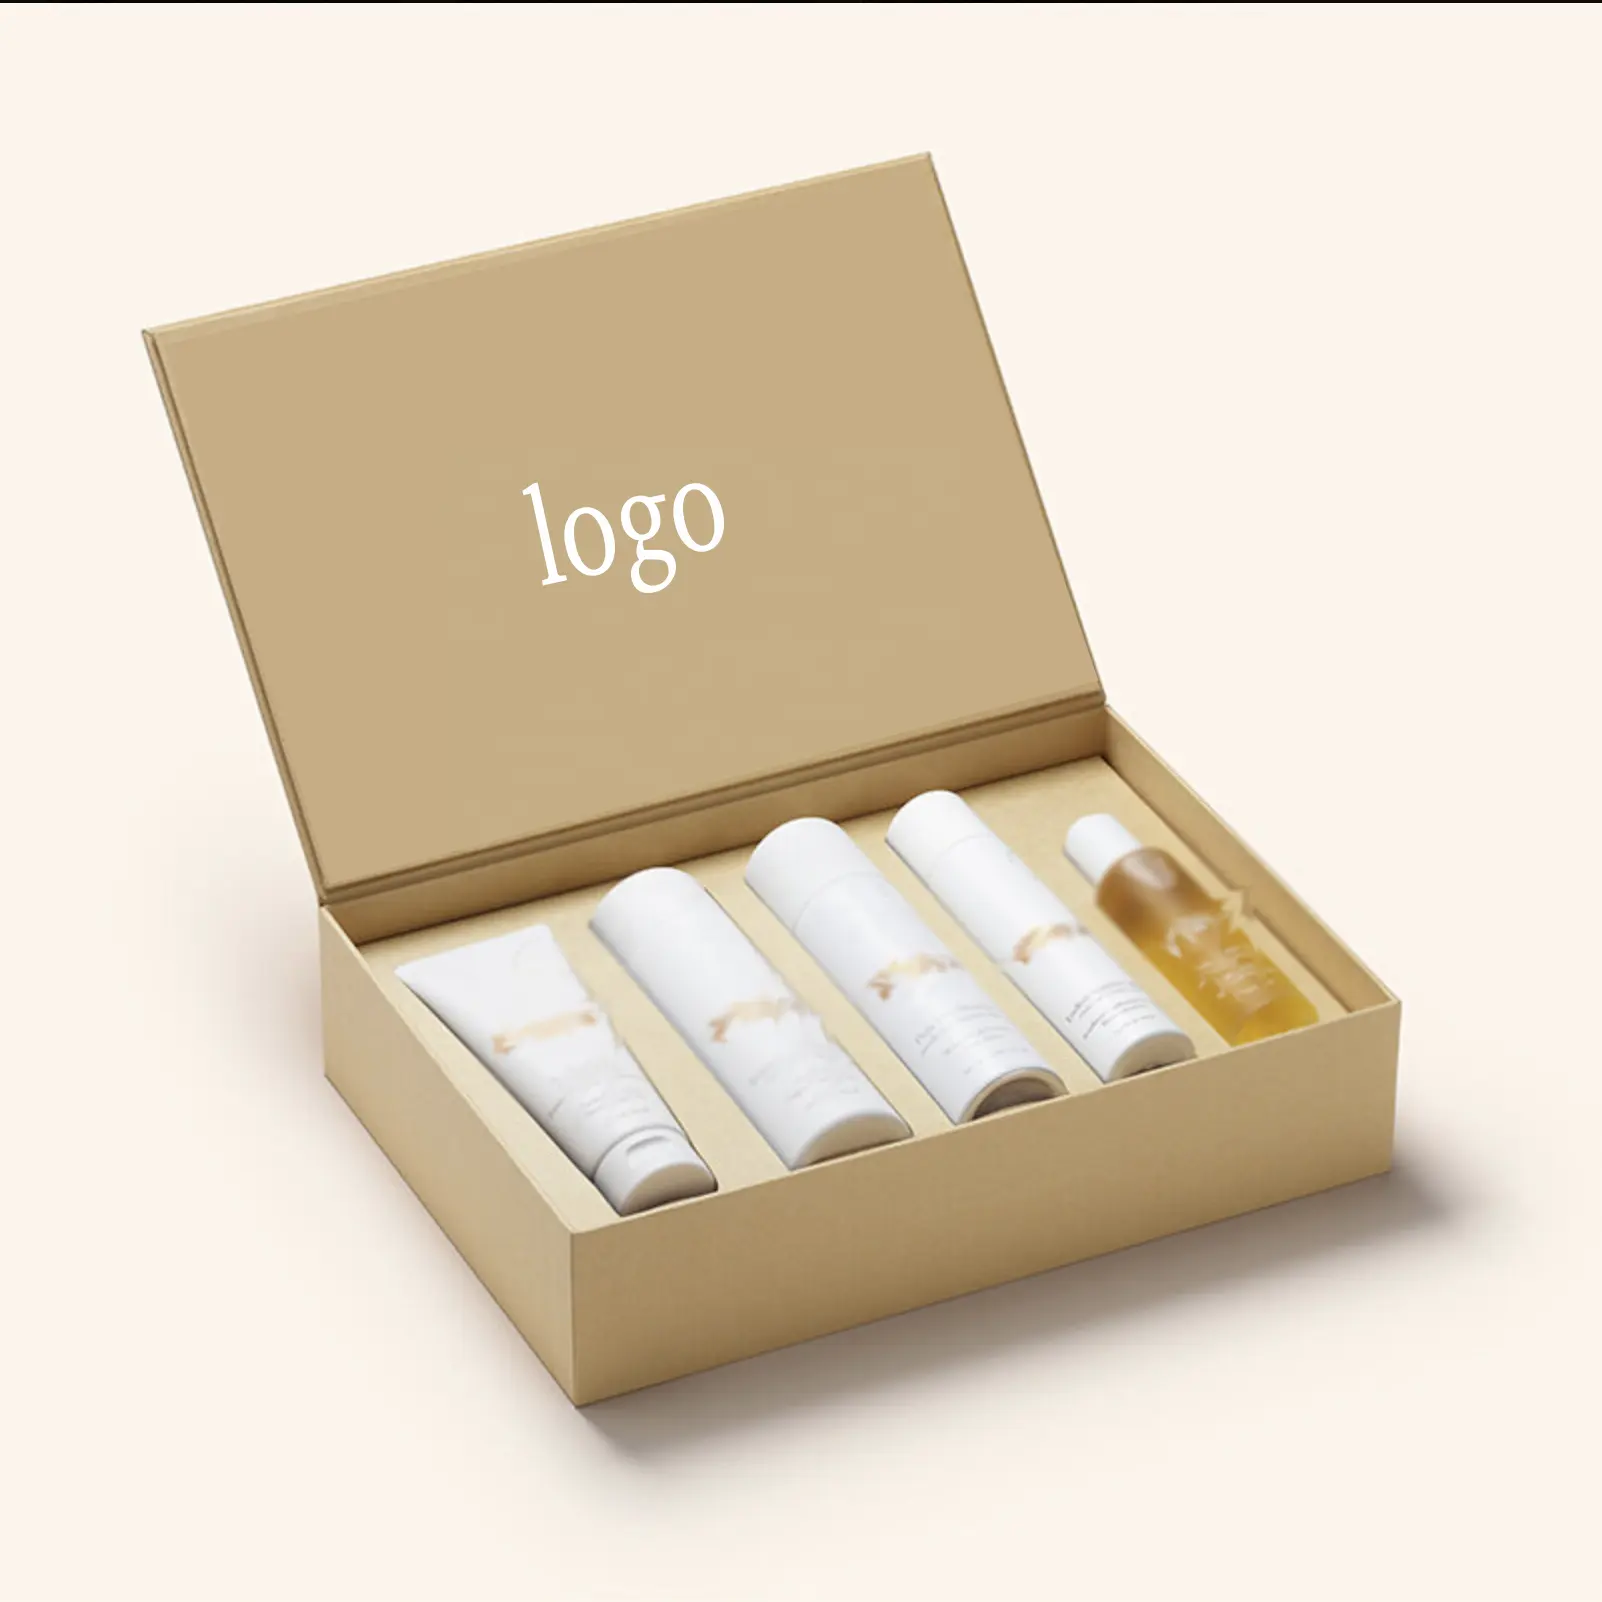 Kexin özel lüks manyetik kağıt karton ruj hediye kutusu cilt bakımı dudak parlatıcısı ambalaj parfüm kutuları cilt bakımı kutusu